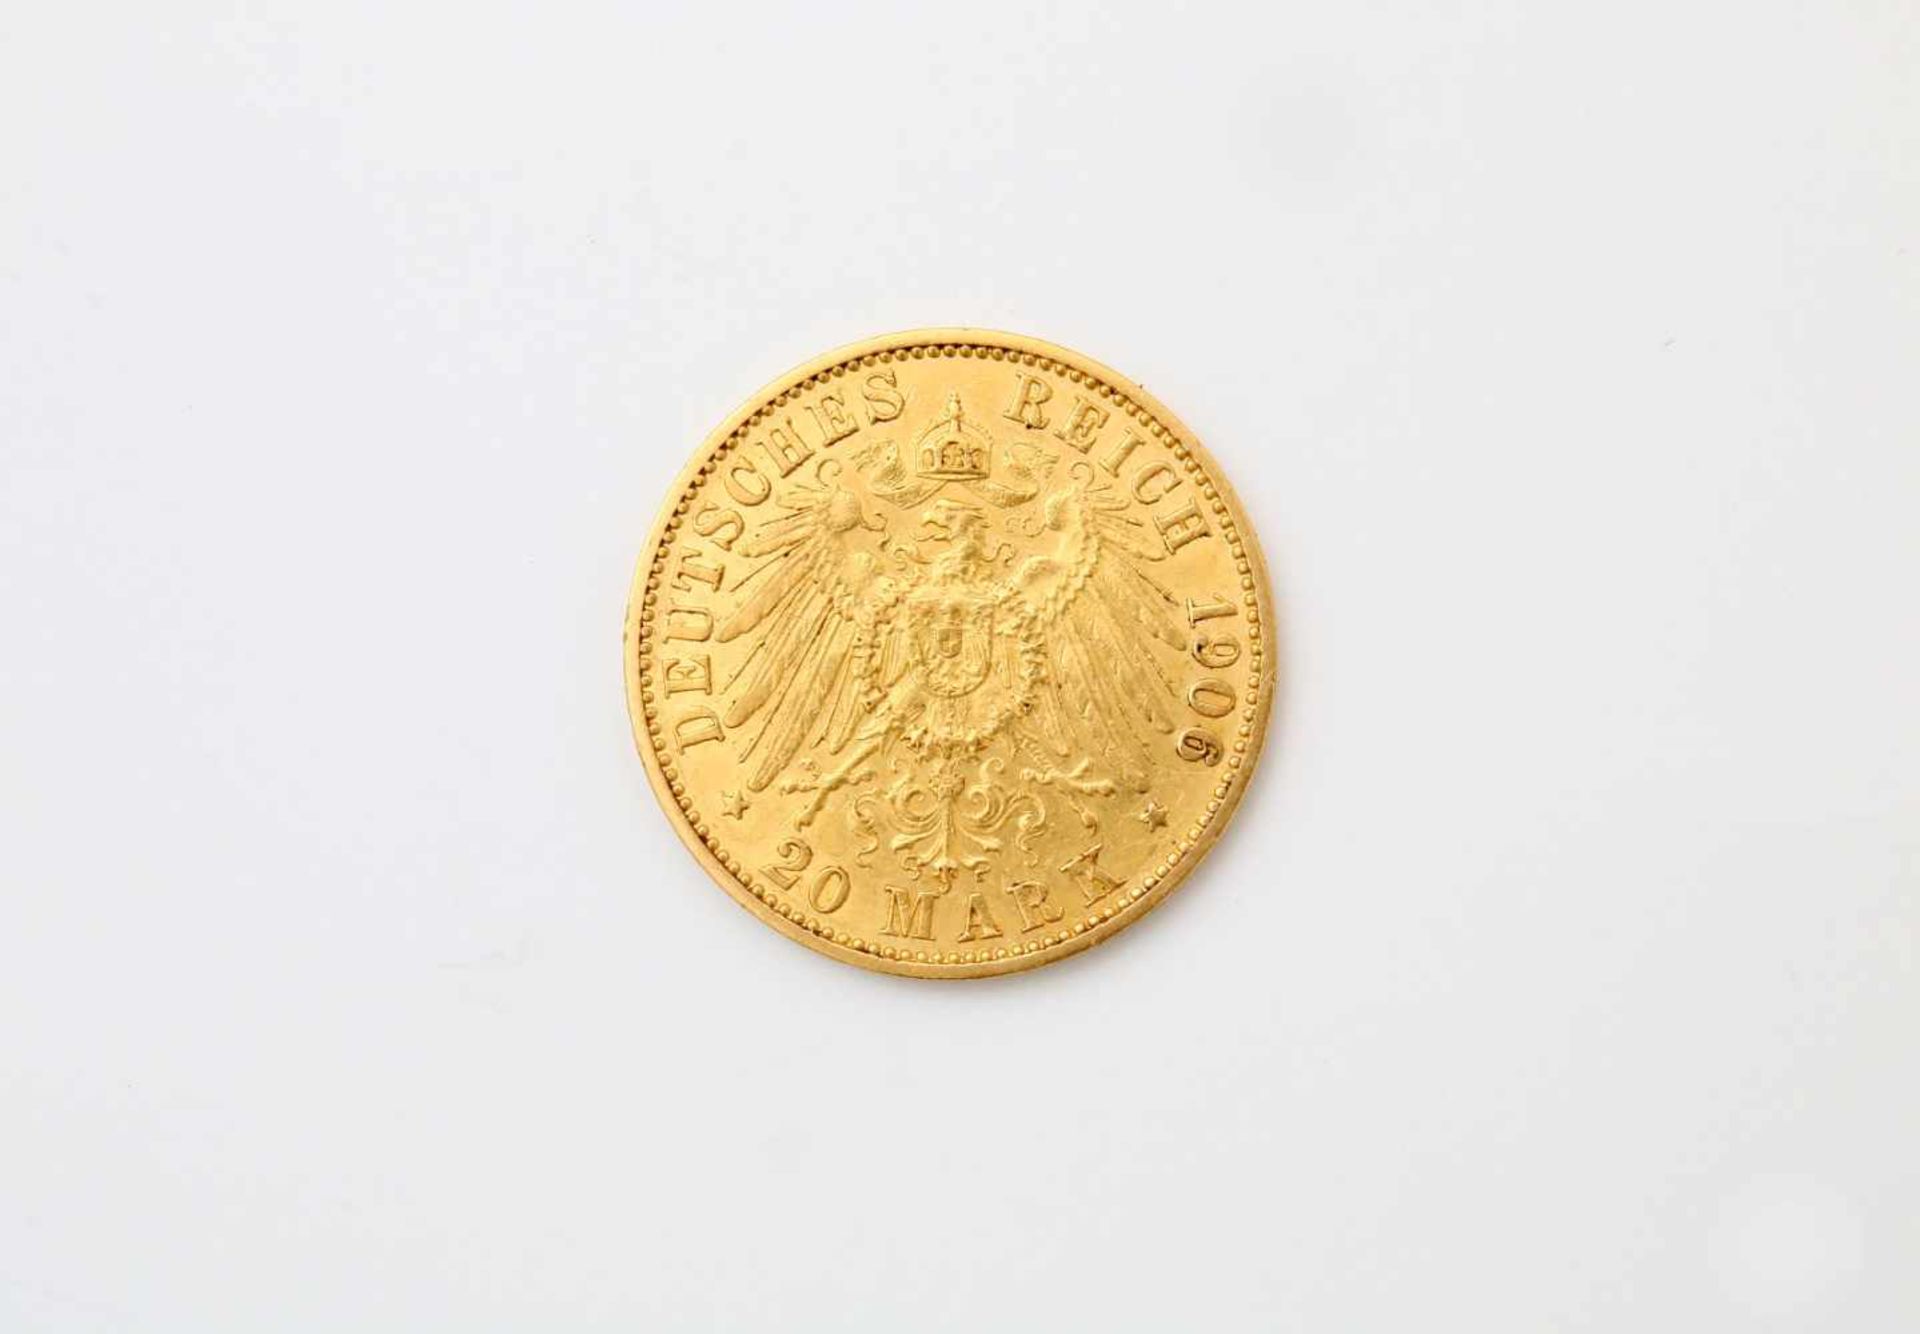 Goldmünze Wilhelm II. 20 Mark - Deutsches Reich GG 900, Prägestätte "A", 1906, ss. Gewicht: 8 g. - Bild 2 aus 2